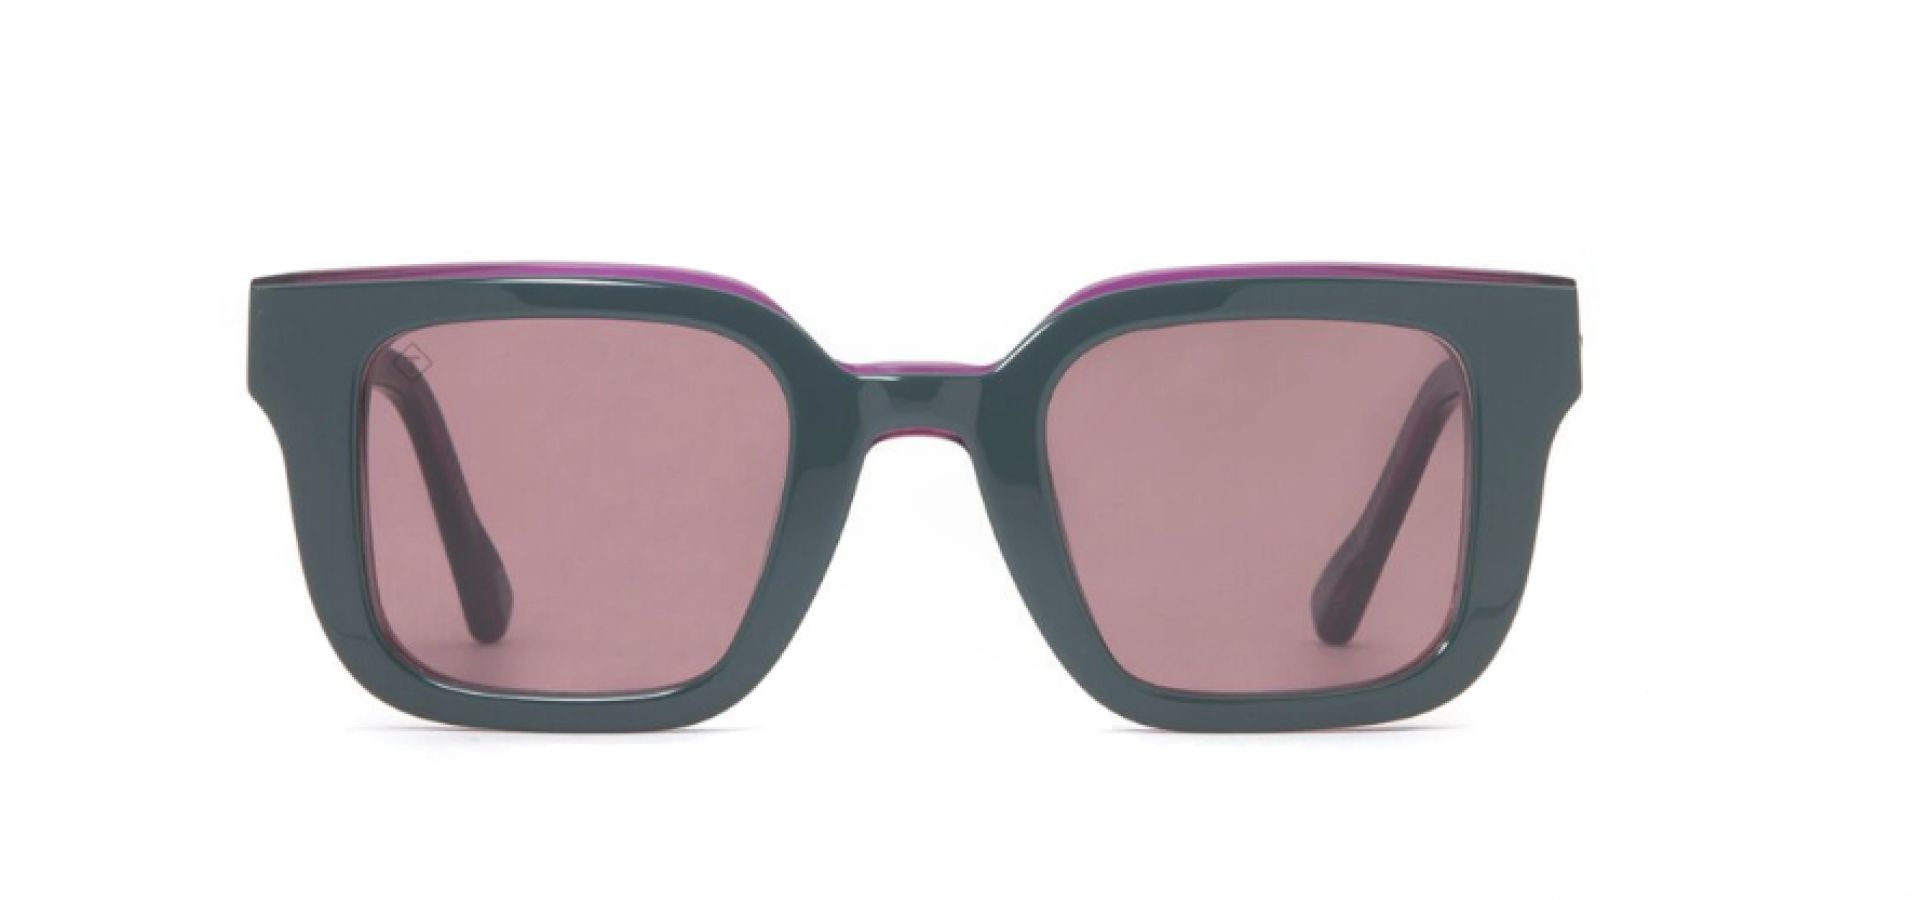 Sončna očala TAVAT FLASH: Velikost: 45/25, Spol: ženska, Material: acetat